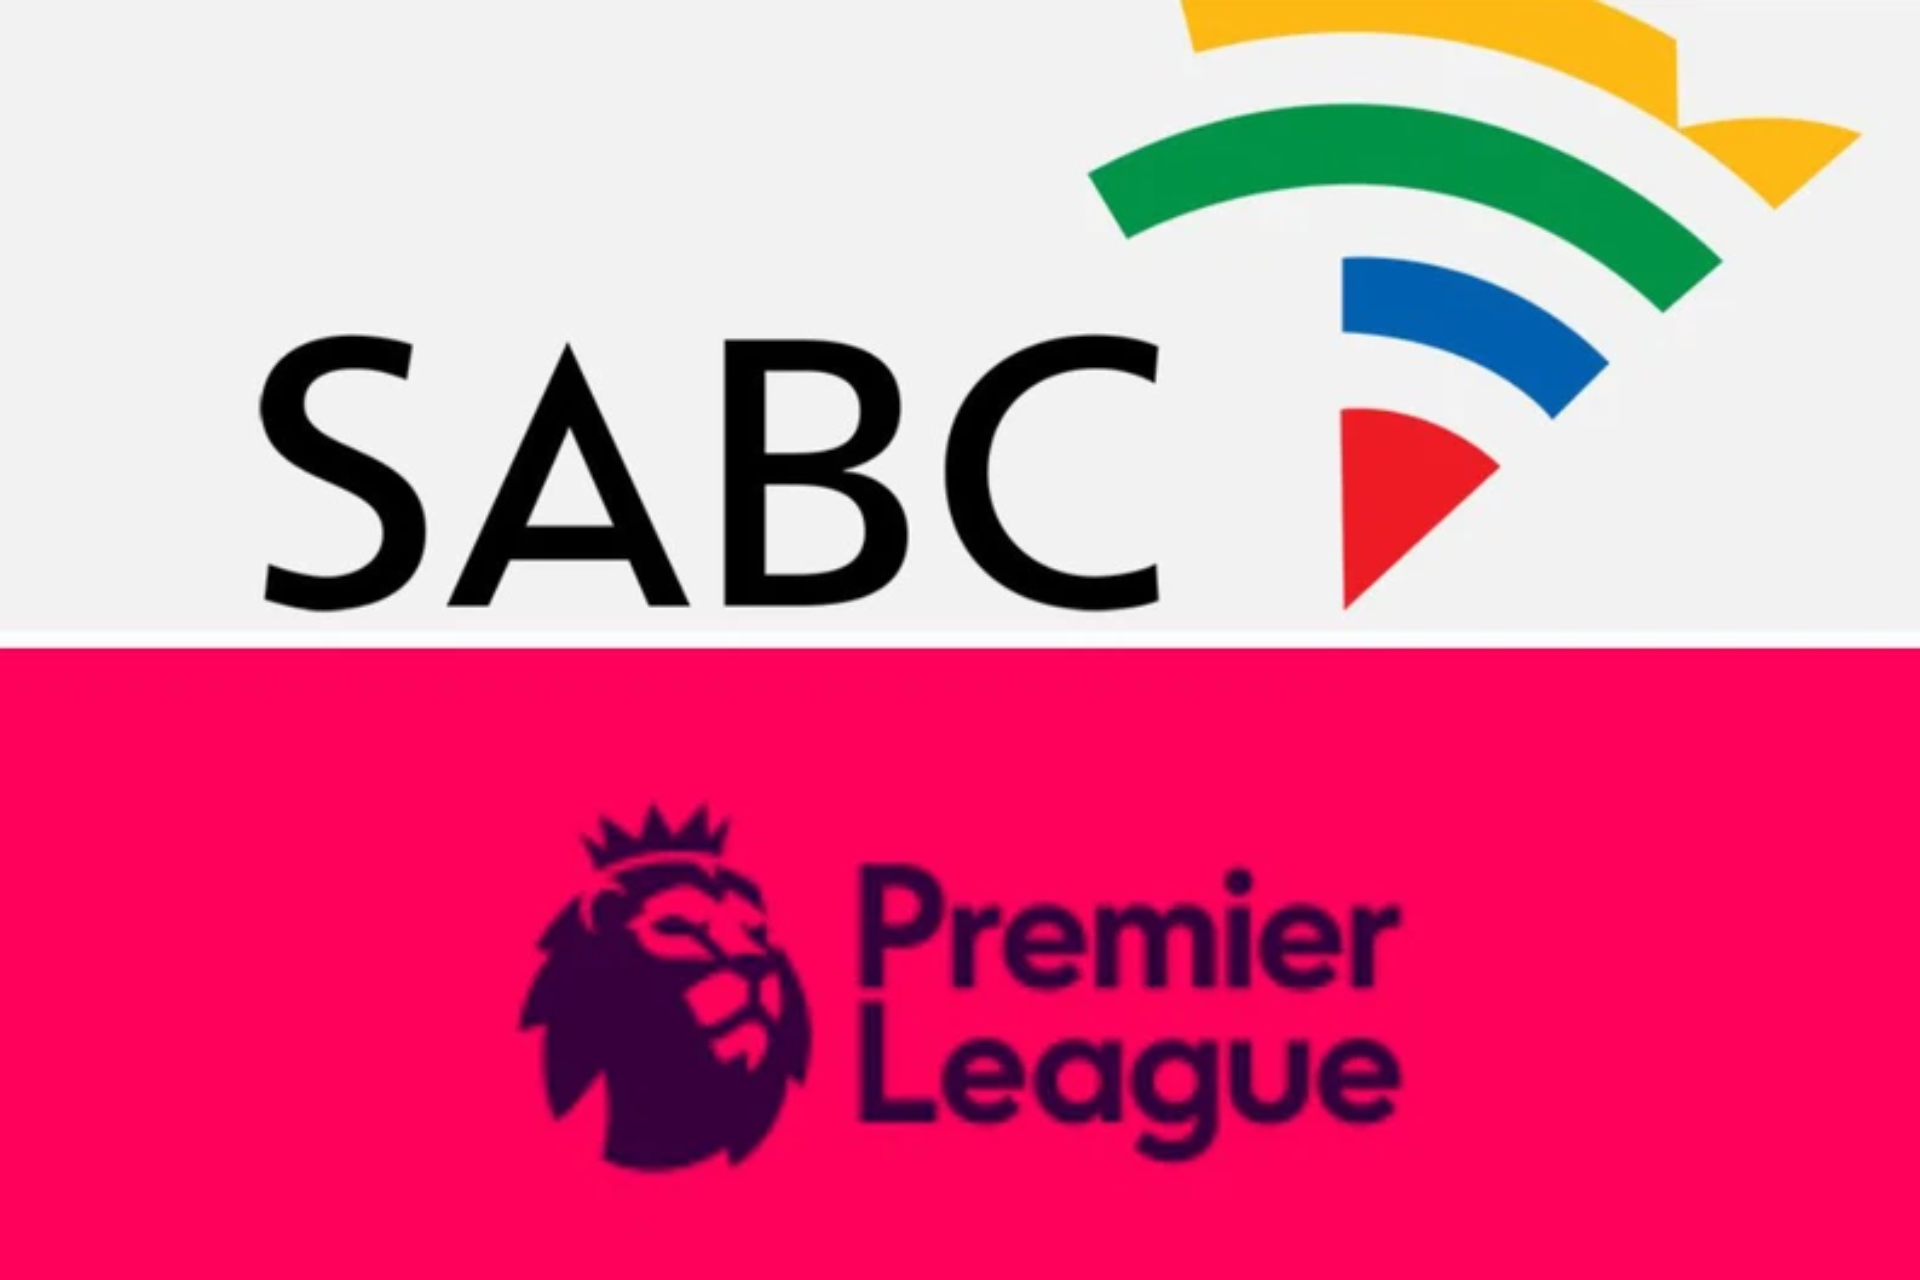 SABC Premier League